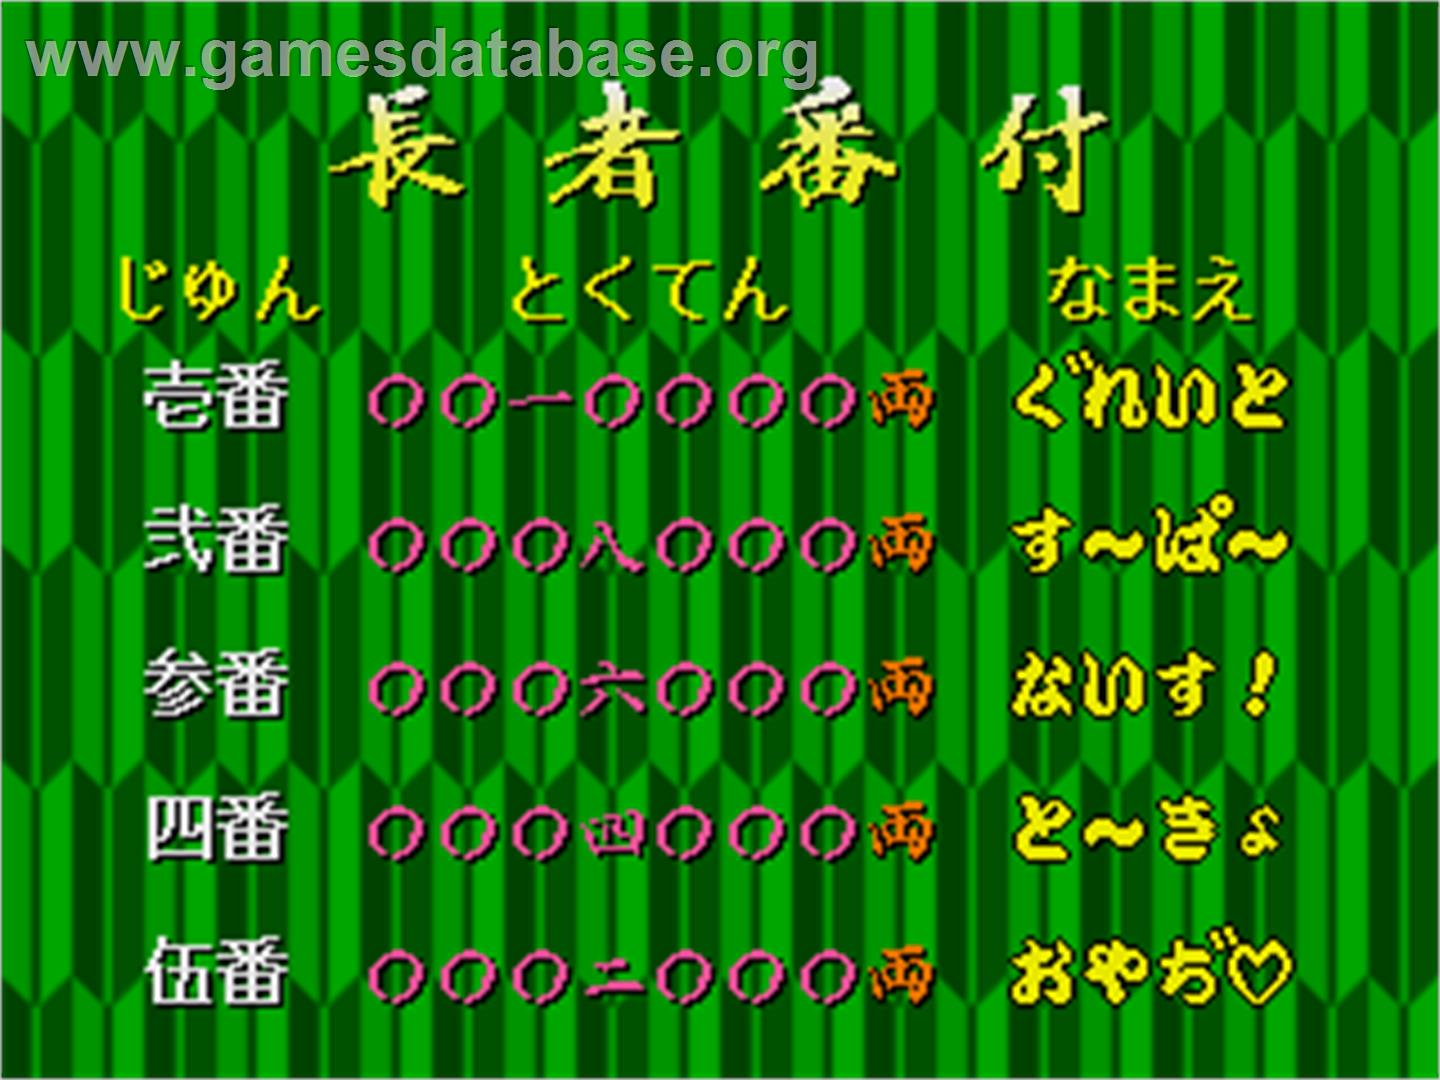 Kokontouzai Eto Monogatari - Arcade - Artwork - High Score Screen